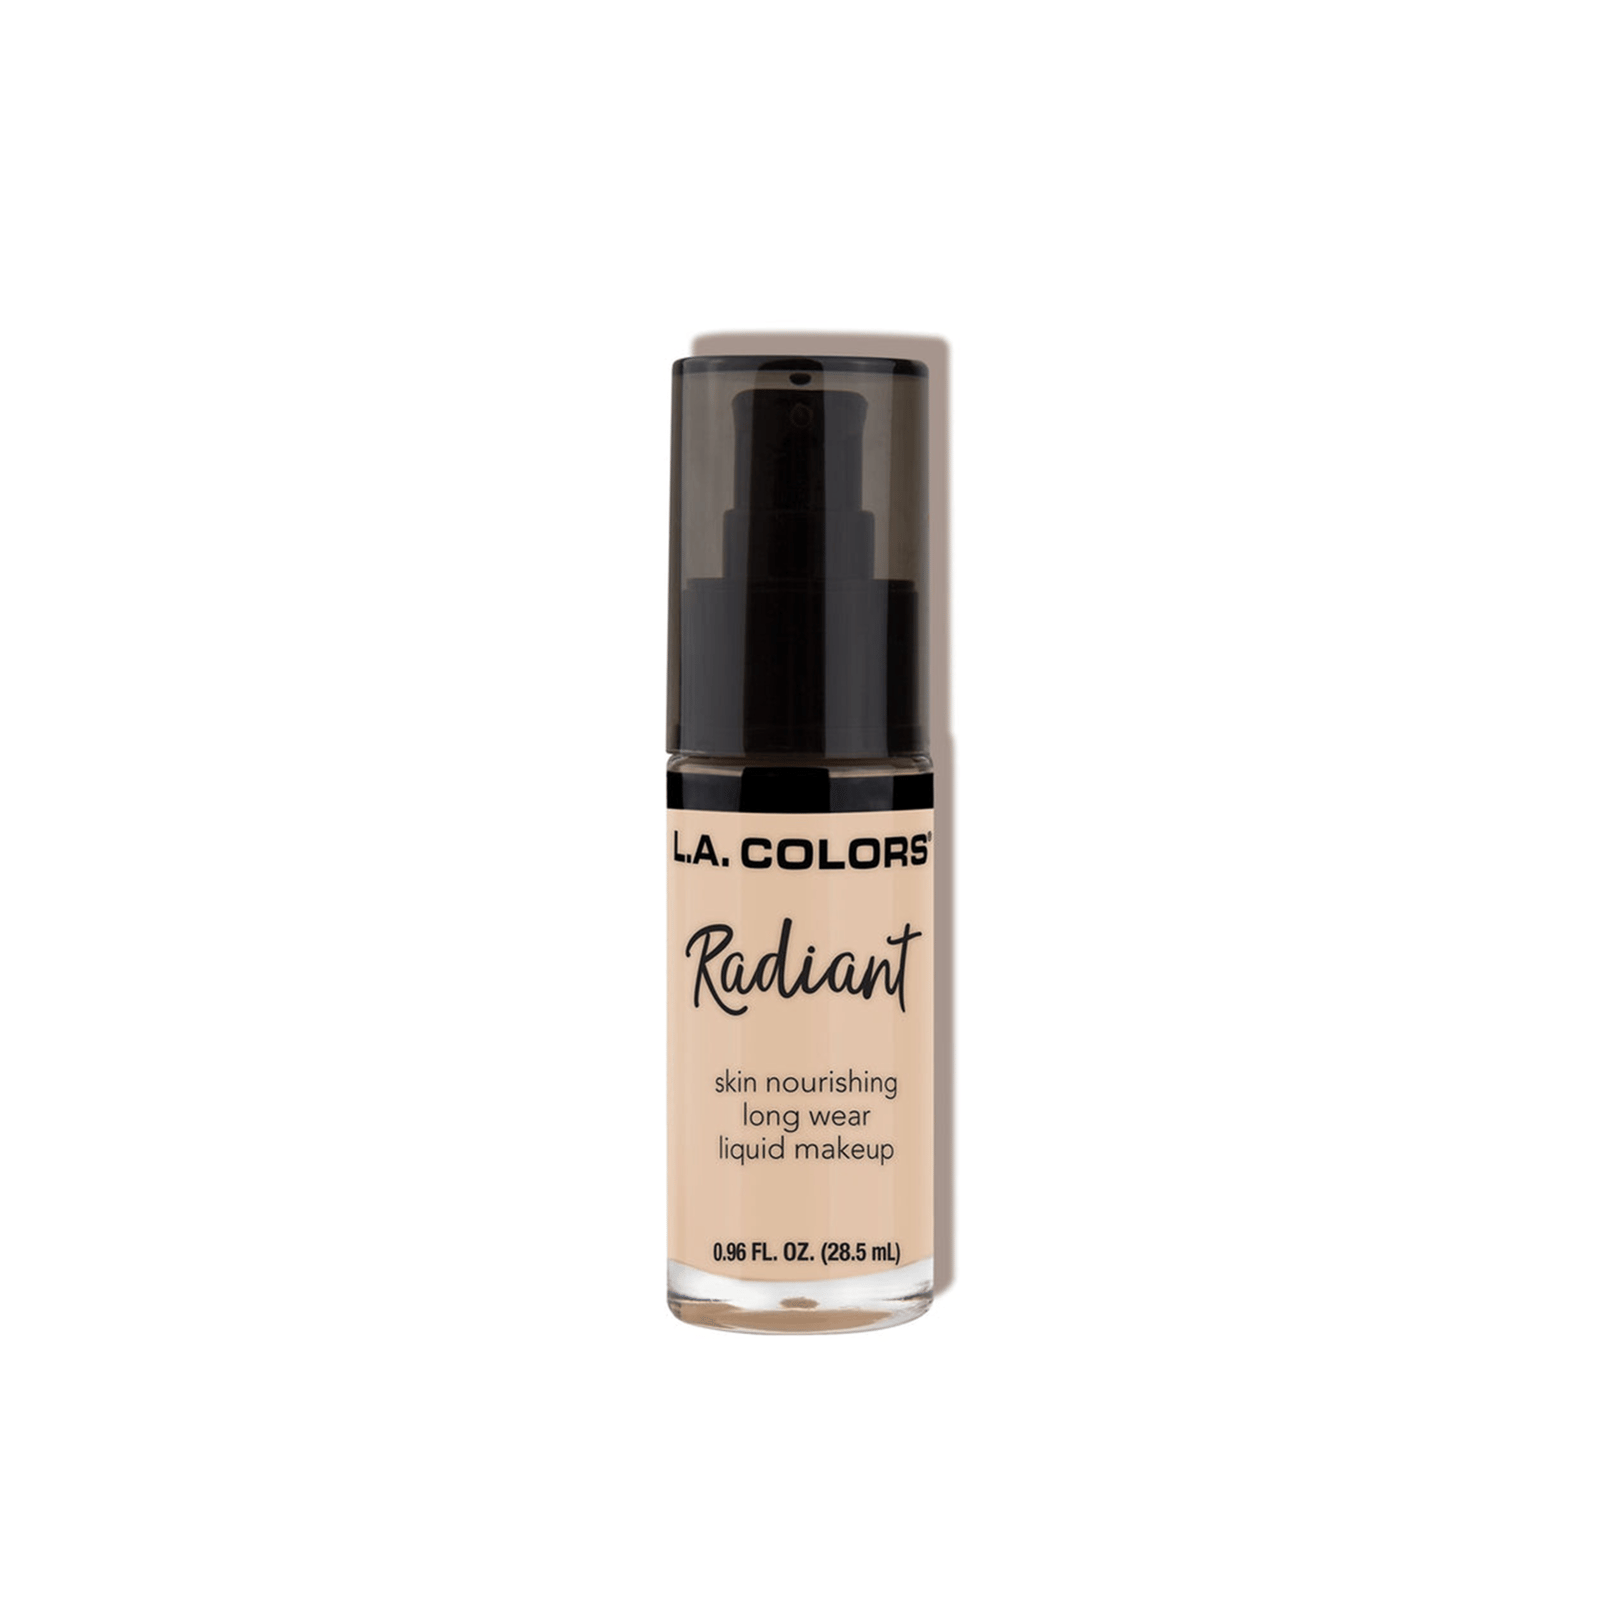 L.A. Colors Radiant Liquid Makeup Foundation CLM386 Vanilla 28.5ml